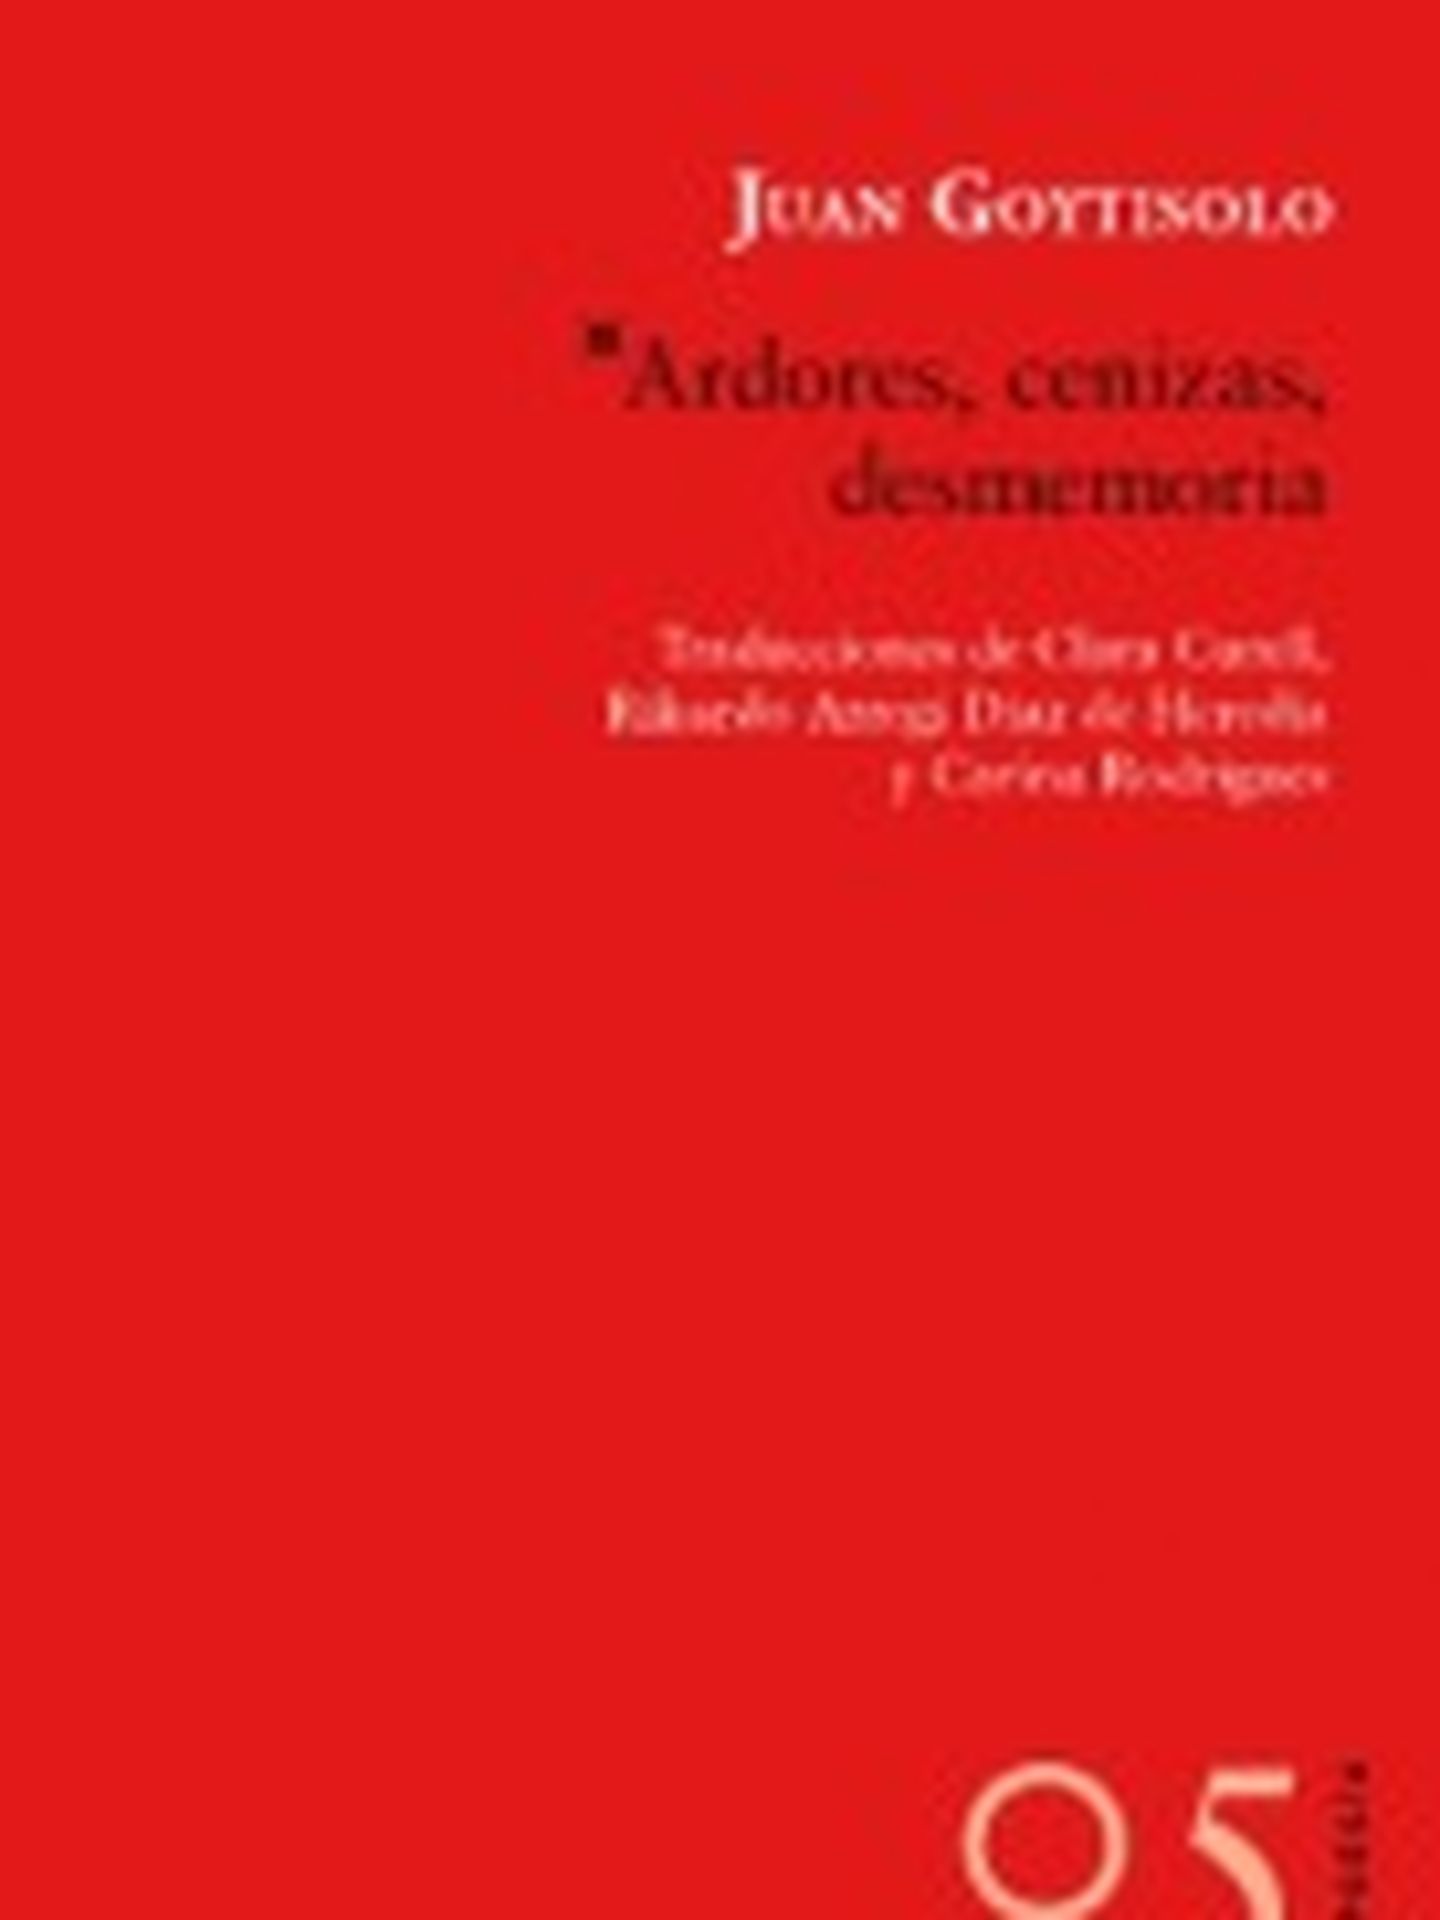 'Ardores, cenizas, desmemorias', el último libro publicado por Juan Goytisolo